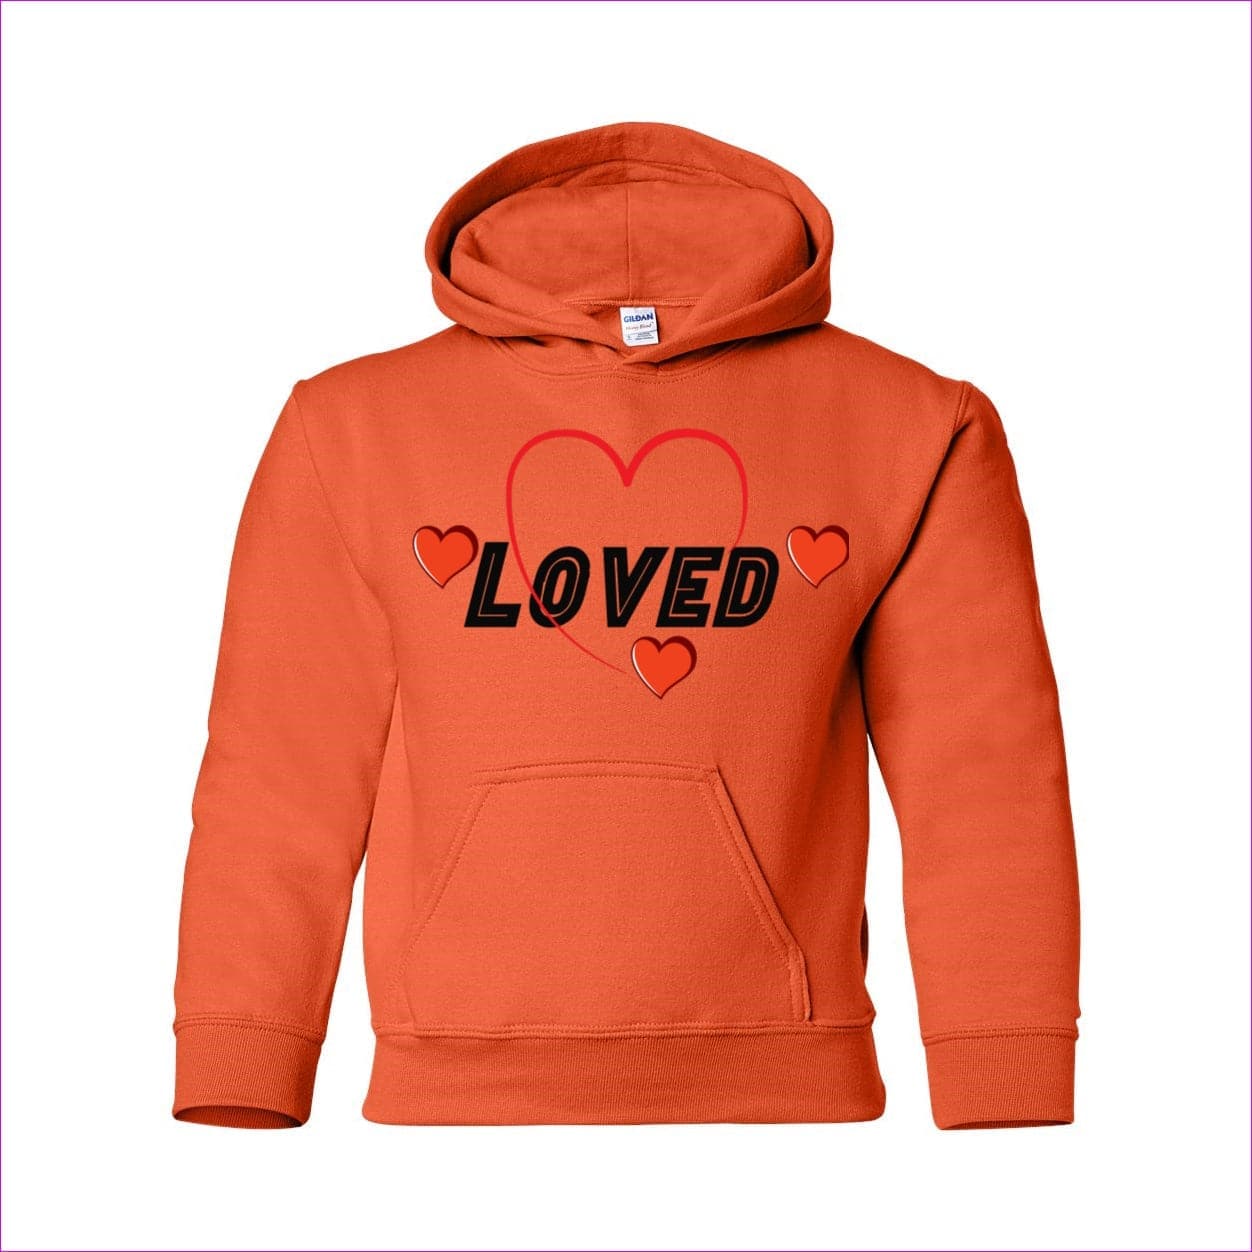 Orange - Loved Heavy Blend Youth Hooded Sweatshirt - kids hoodie at TFC&H Co.